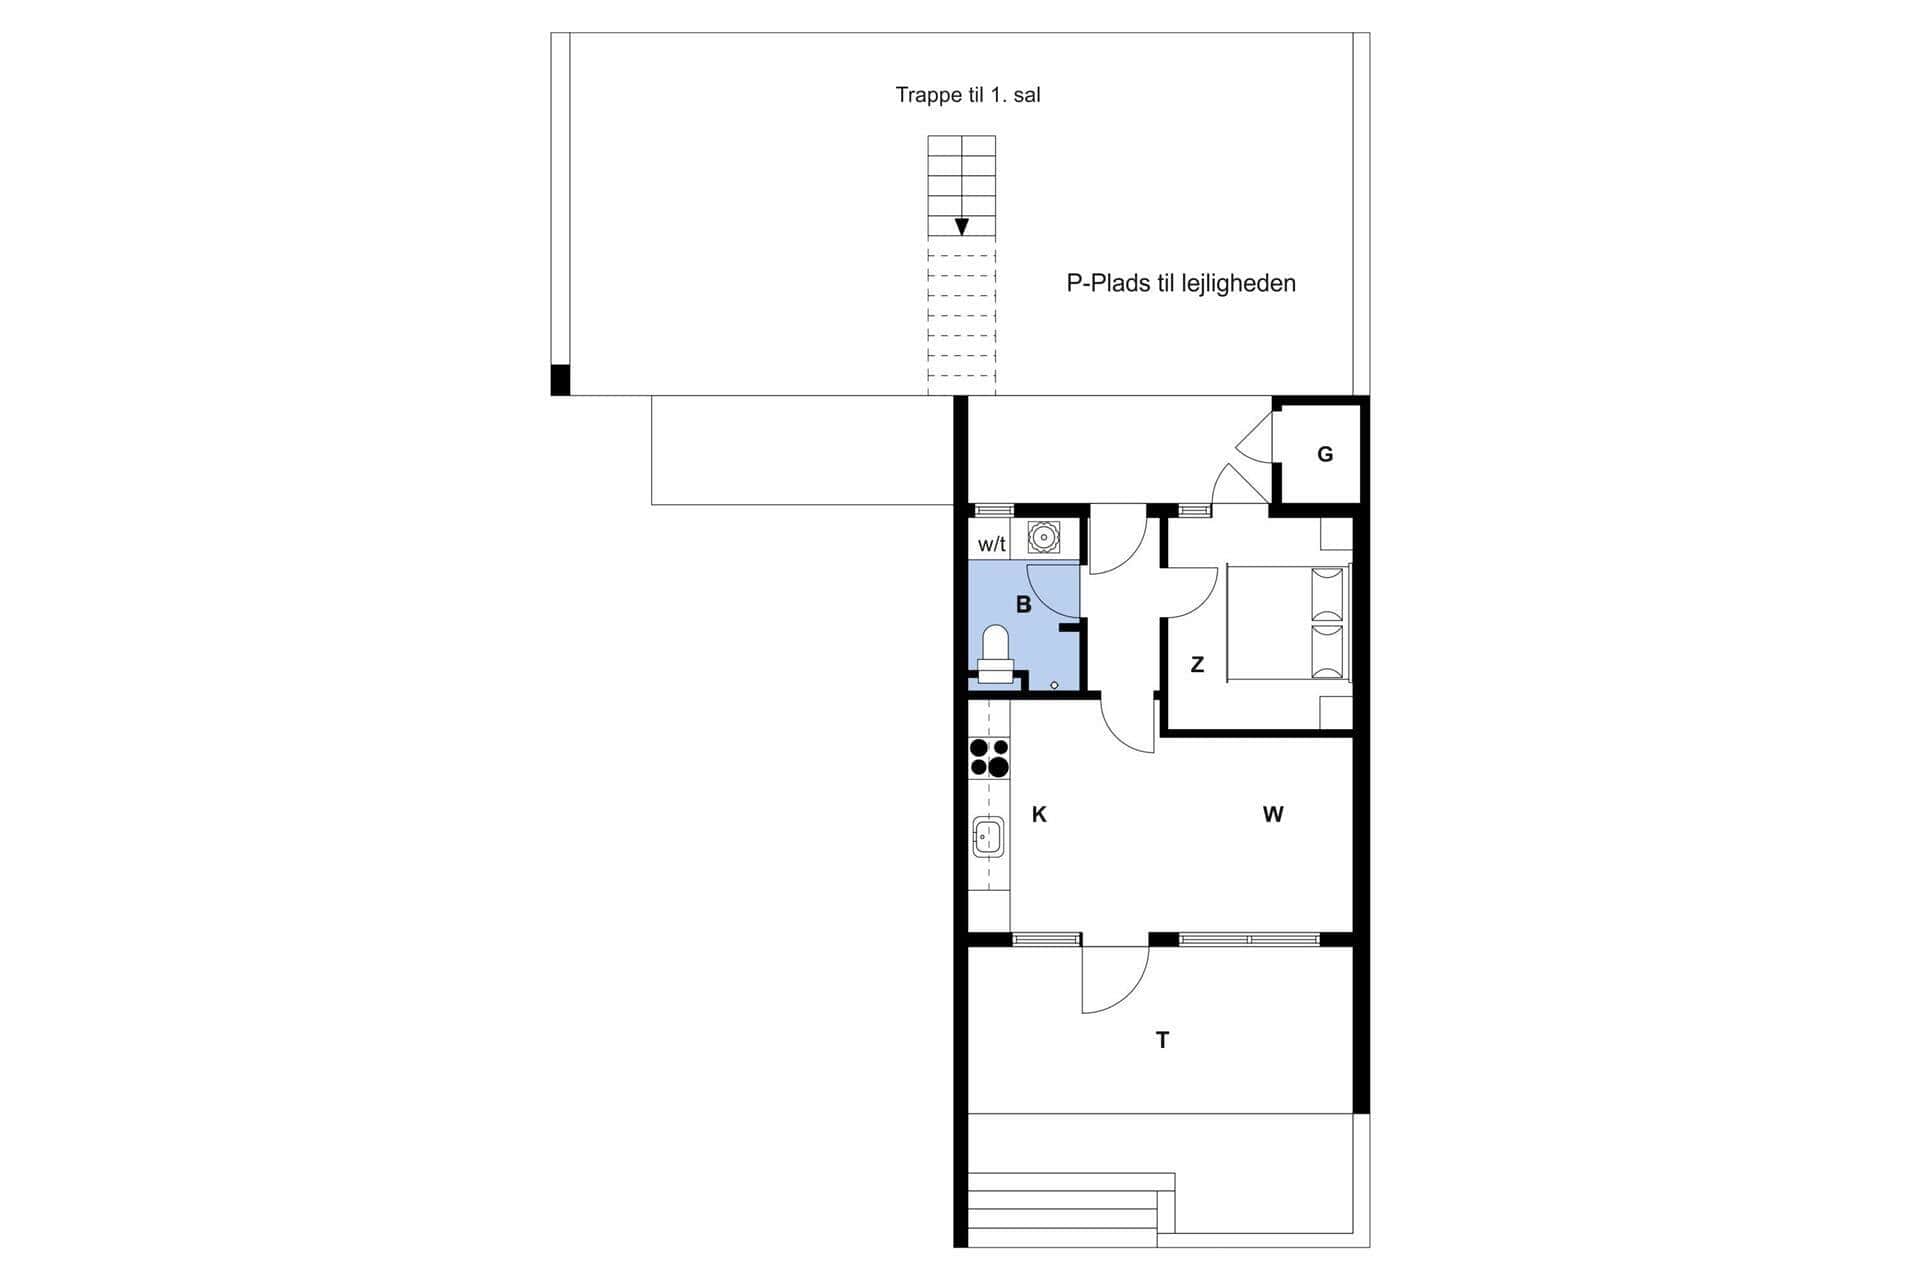 Interior 21-4 Holiday-home 911, Langsand 110, DK - 6960 Hvide Sande